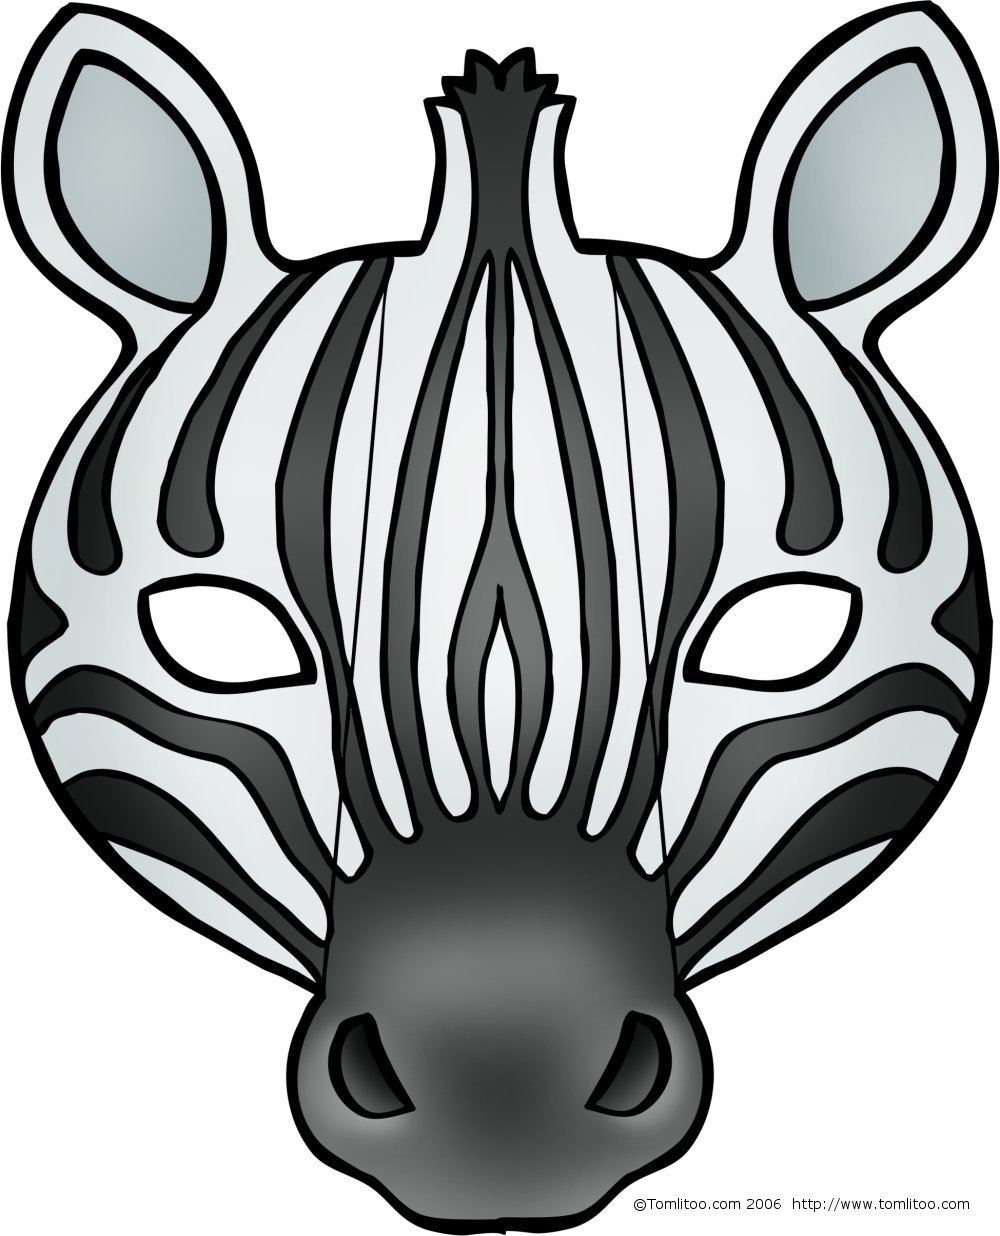 OPASKI DO INSCENIZACJI - Zebra.jpg